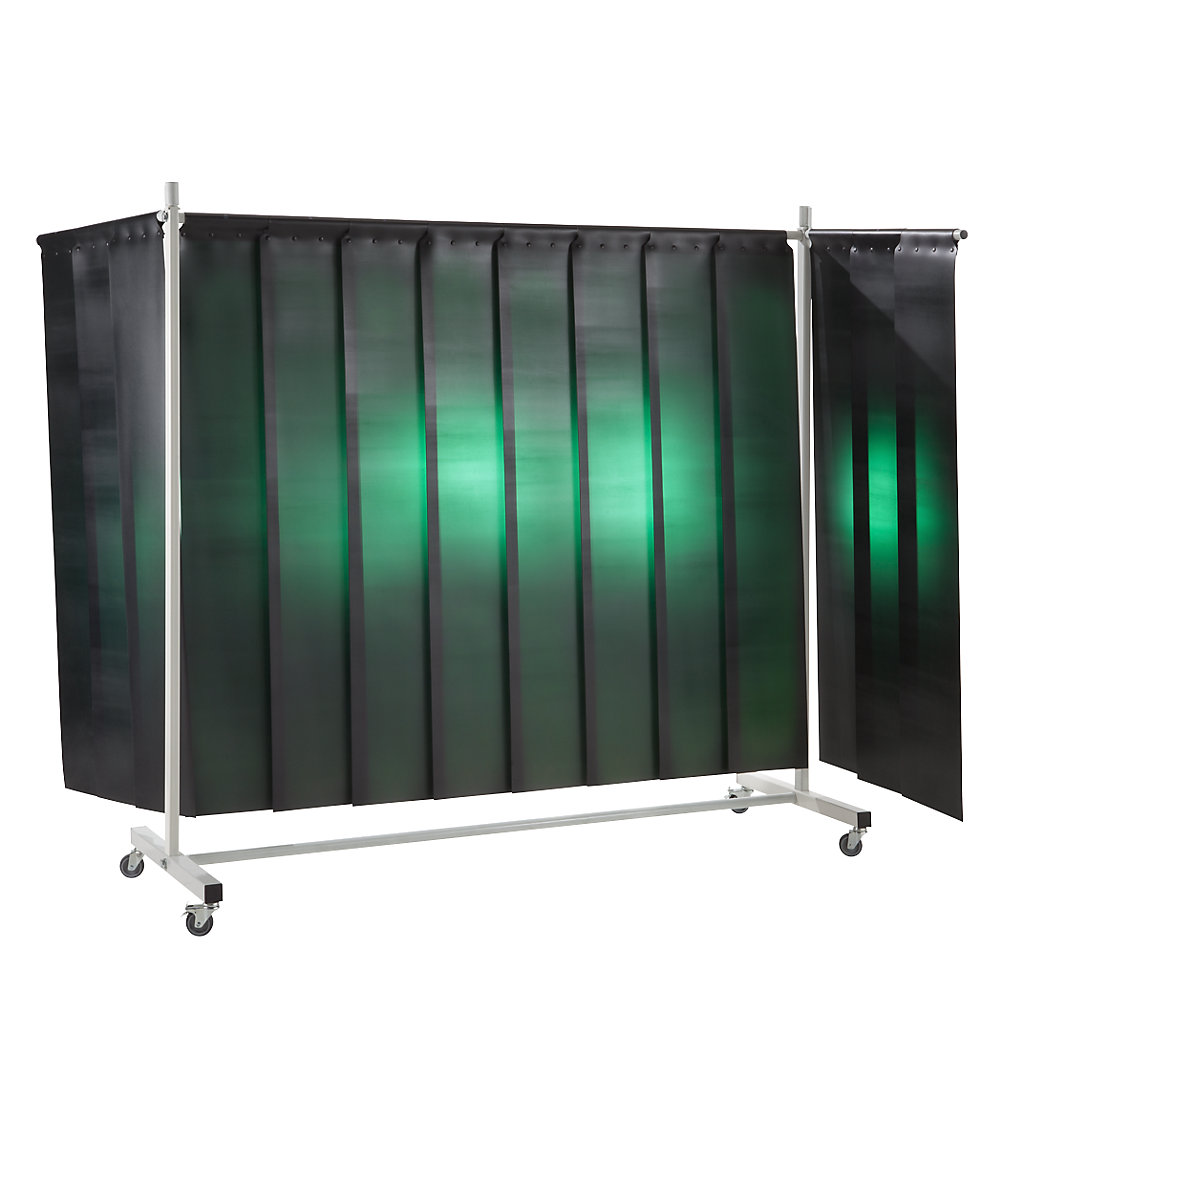 Ecran mobile de protection pour soudeur, avec rideau à lanières, vert foncé, l x h 3700 x 2100 mm, 3 élément-4